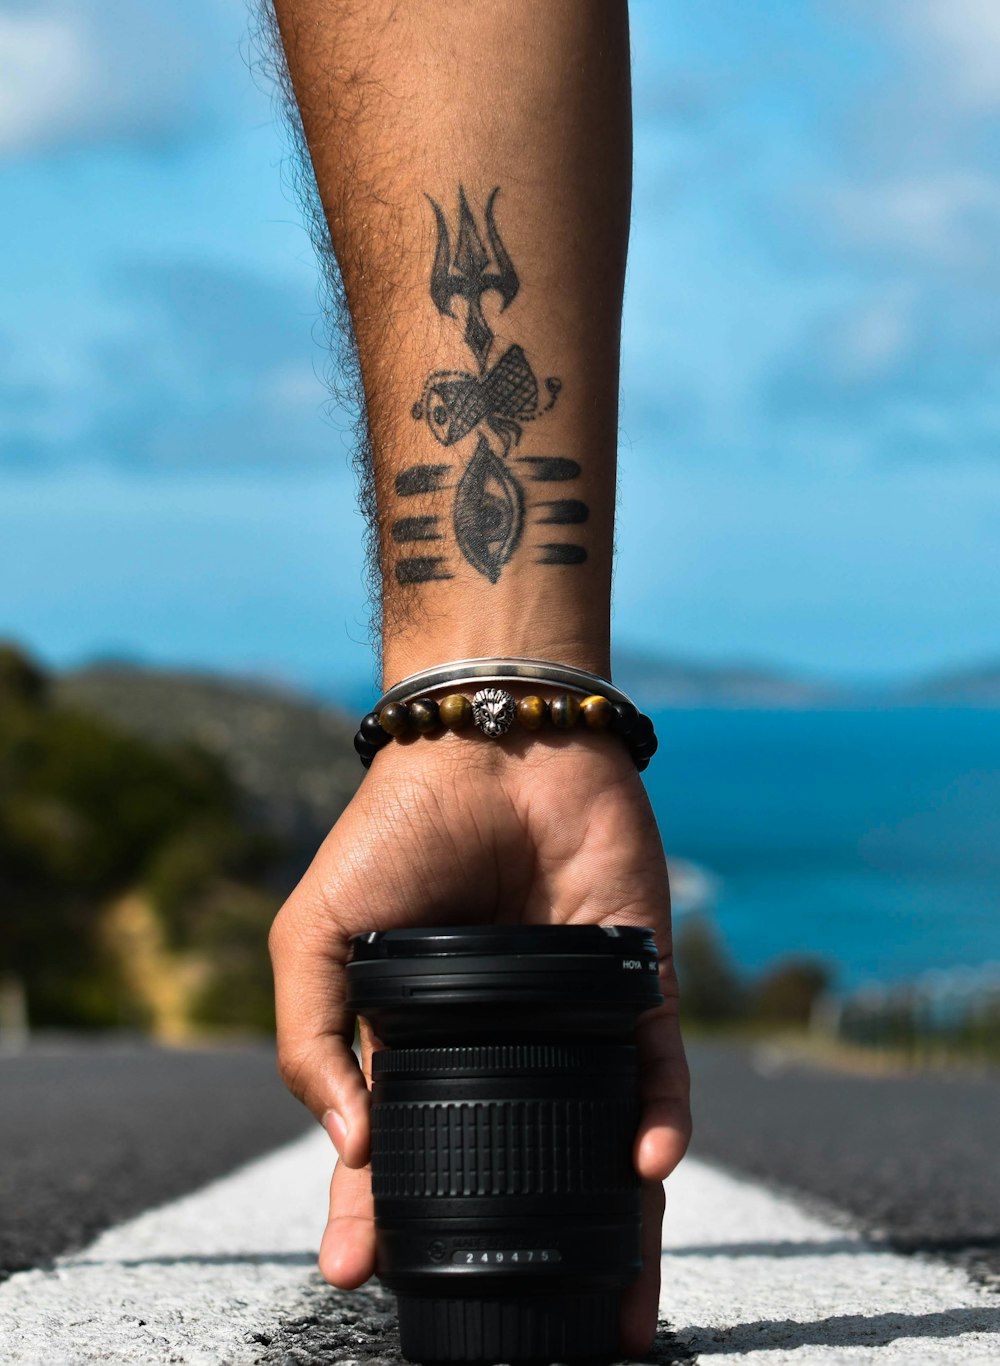 pessoa com tatuagem preta e marrom no braço